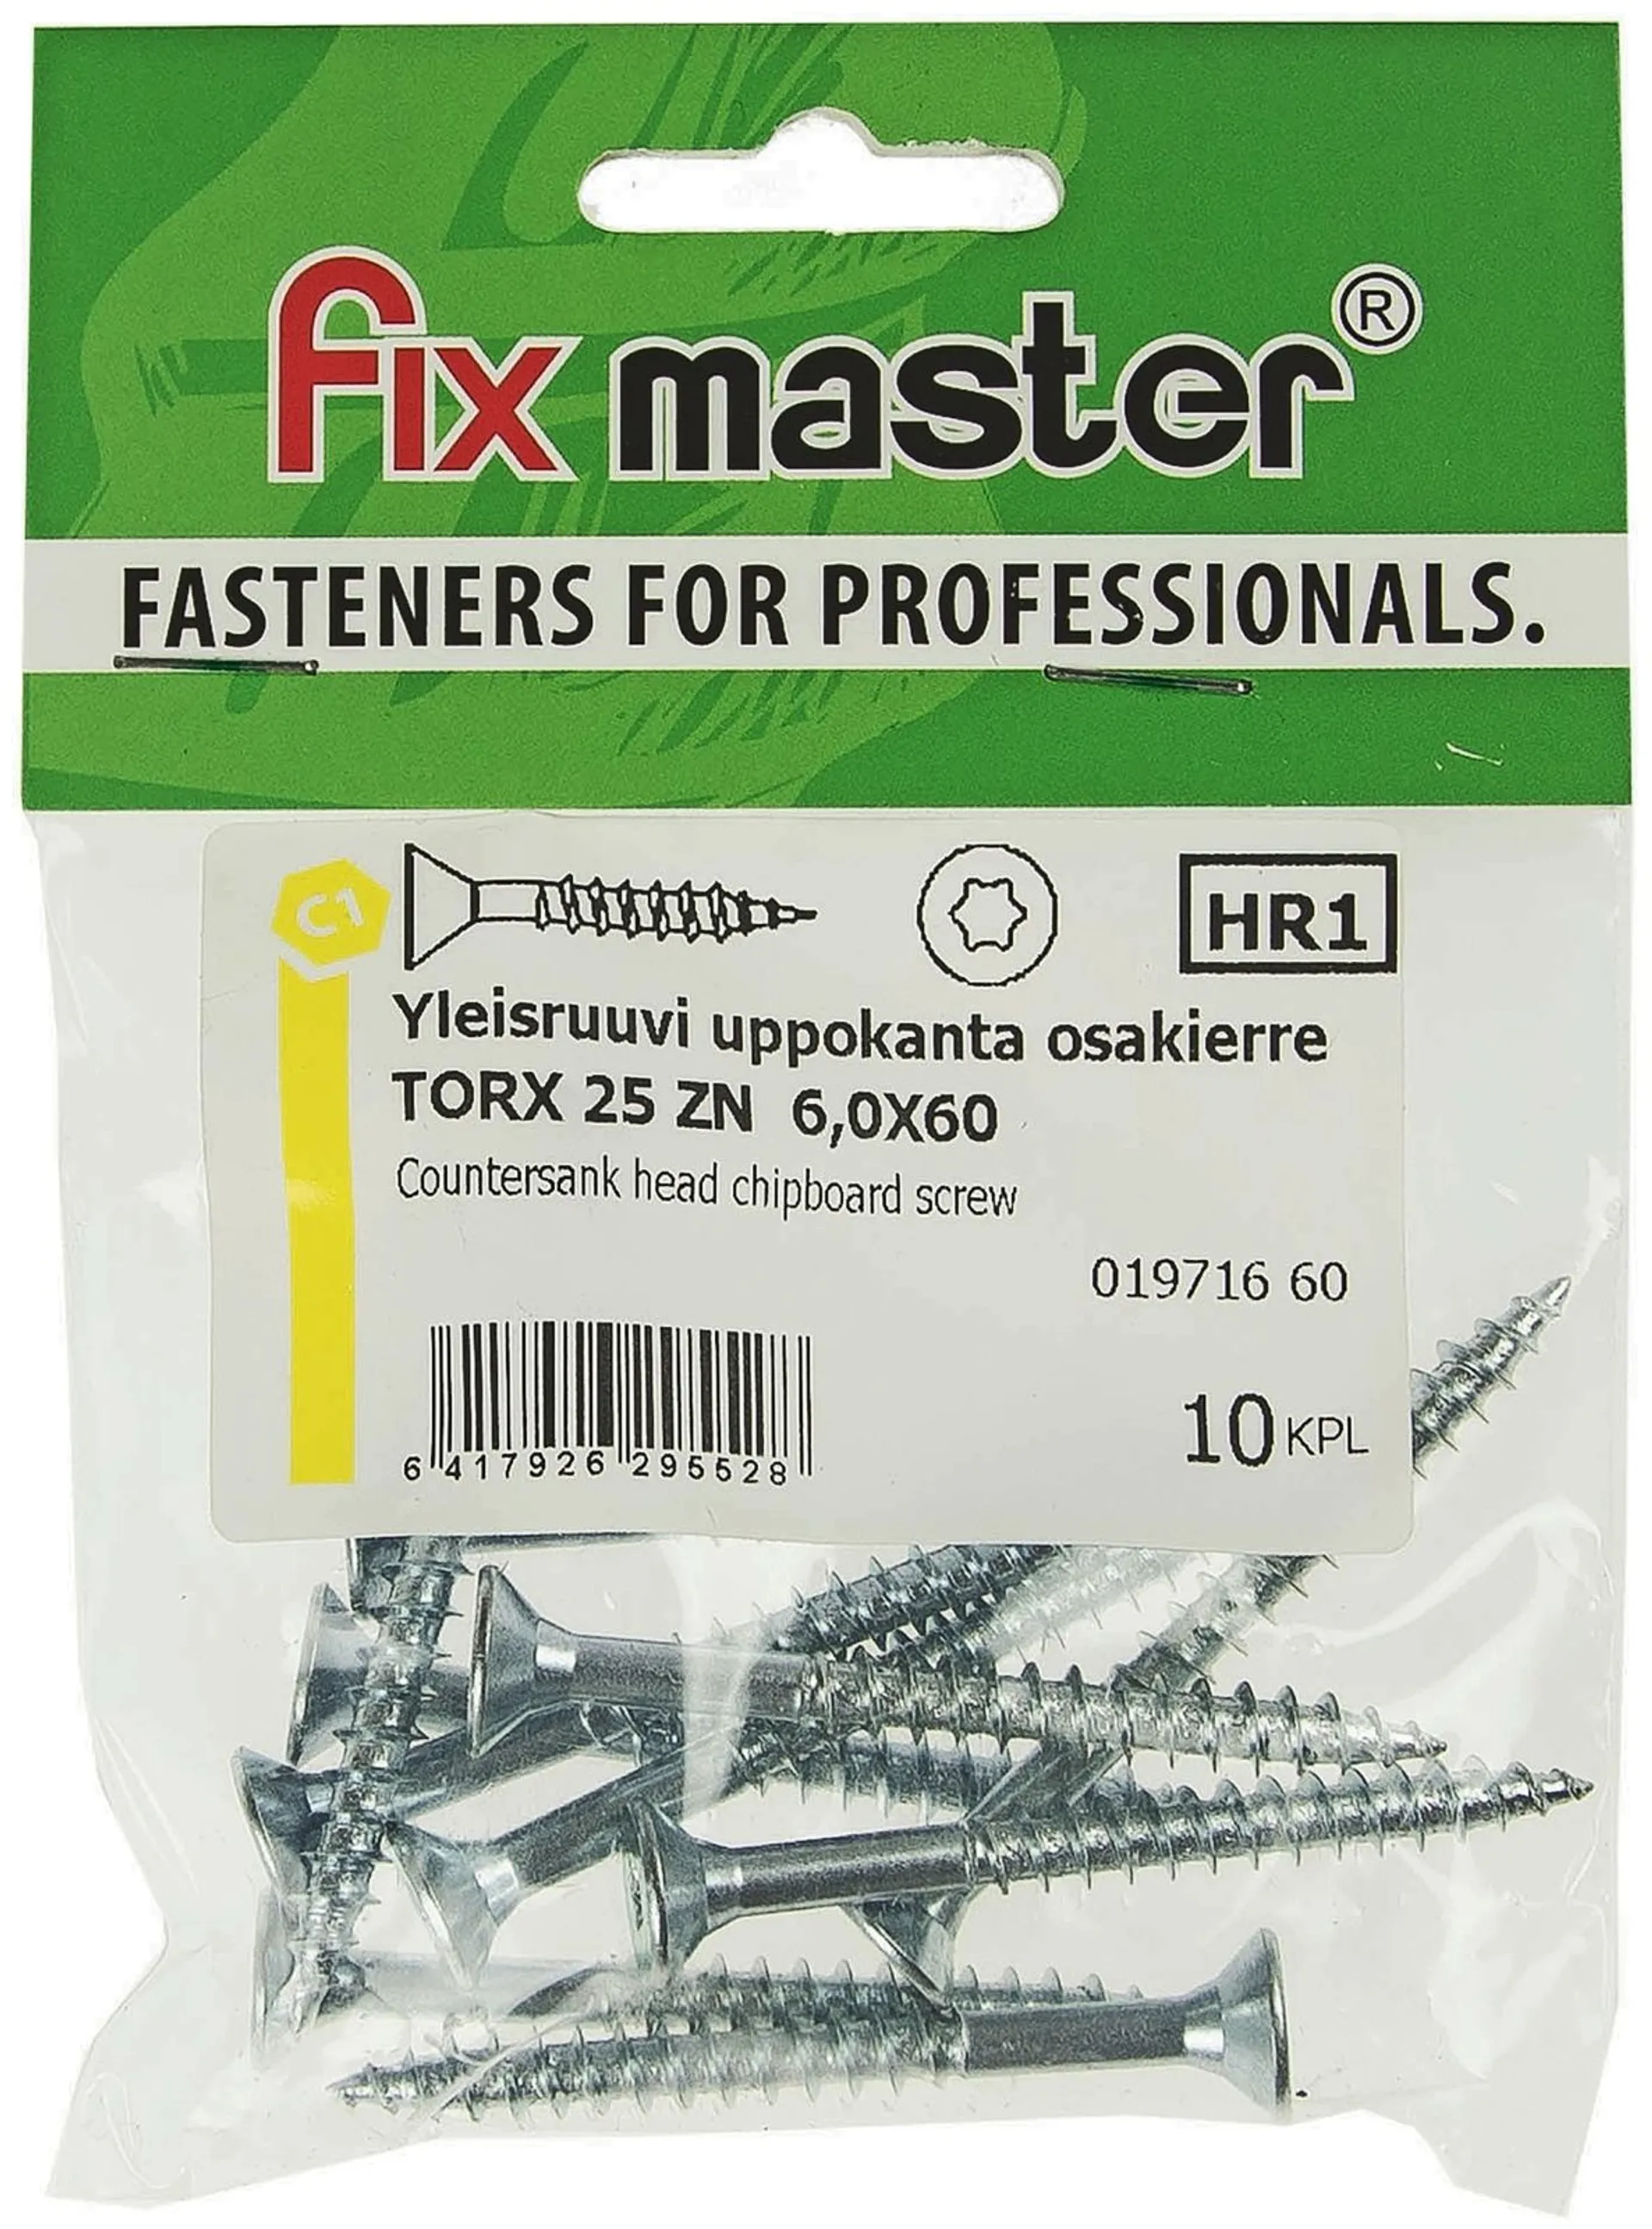 Fix Master yleisruuvi uppokanta osakierre 6X60 torx25 sinkitty 10kpl